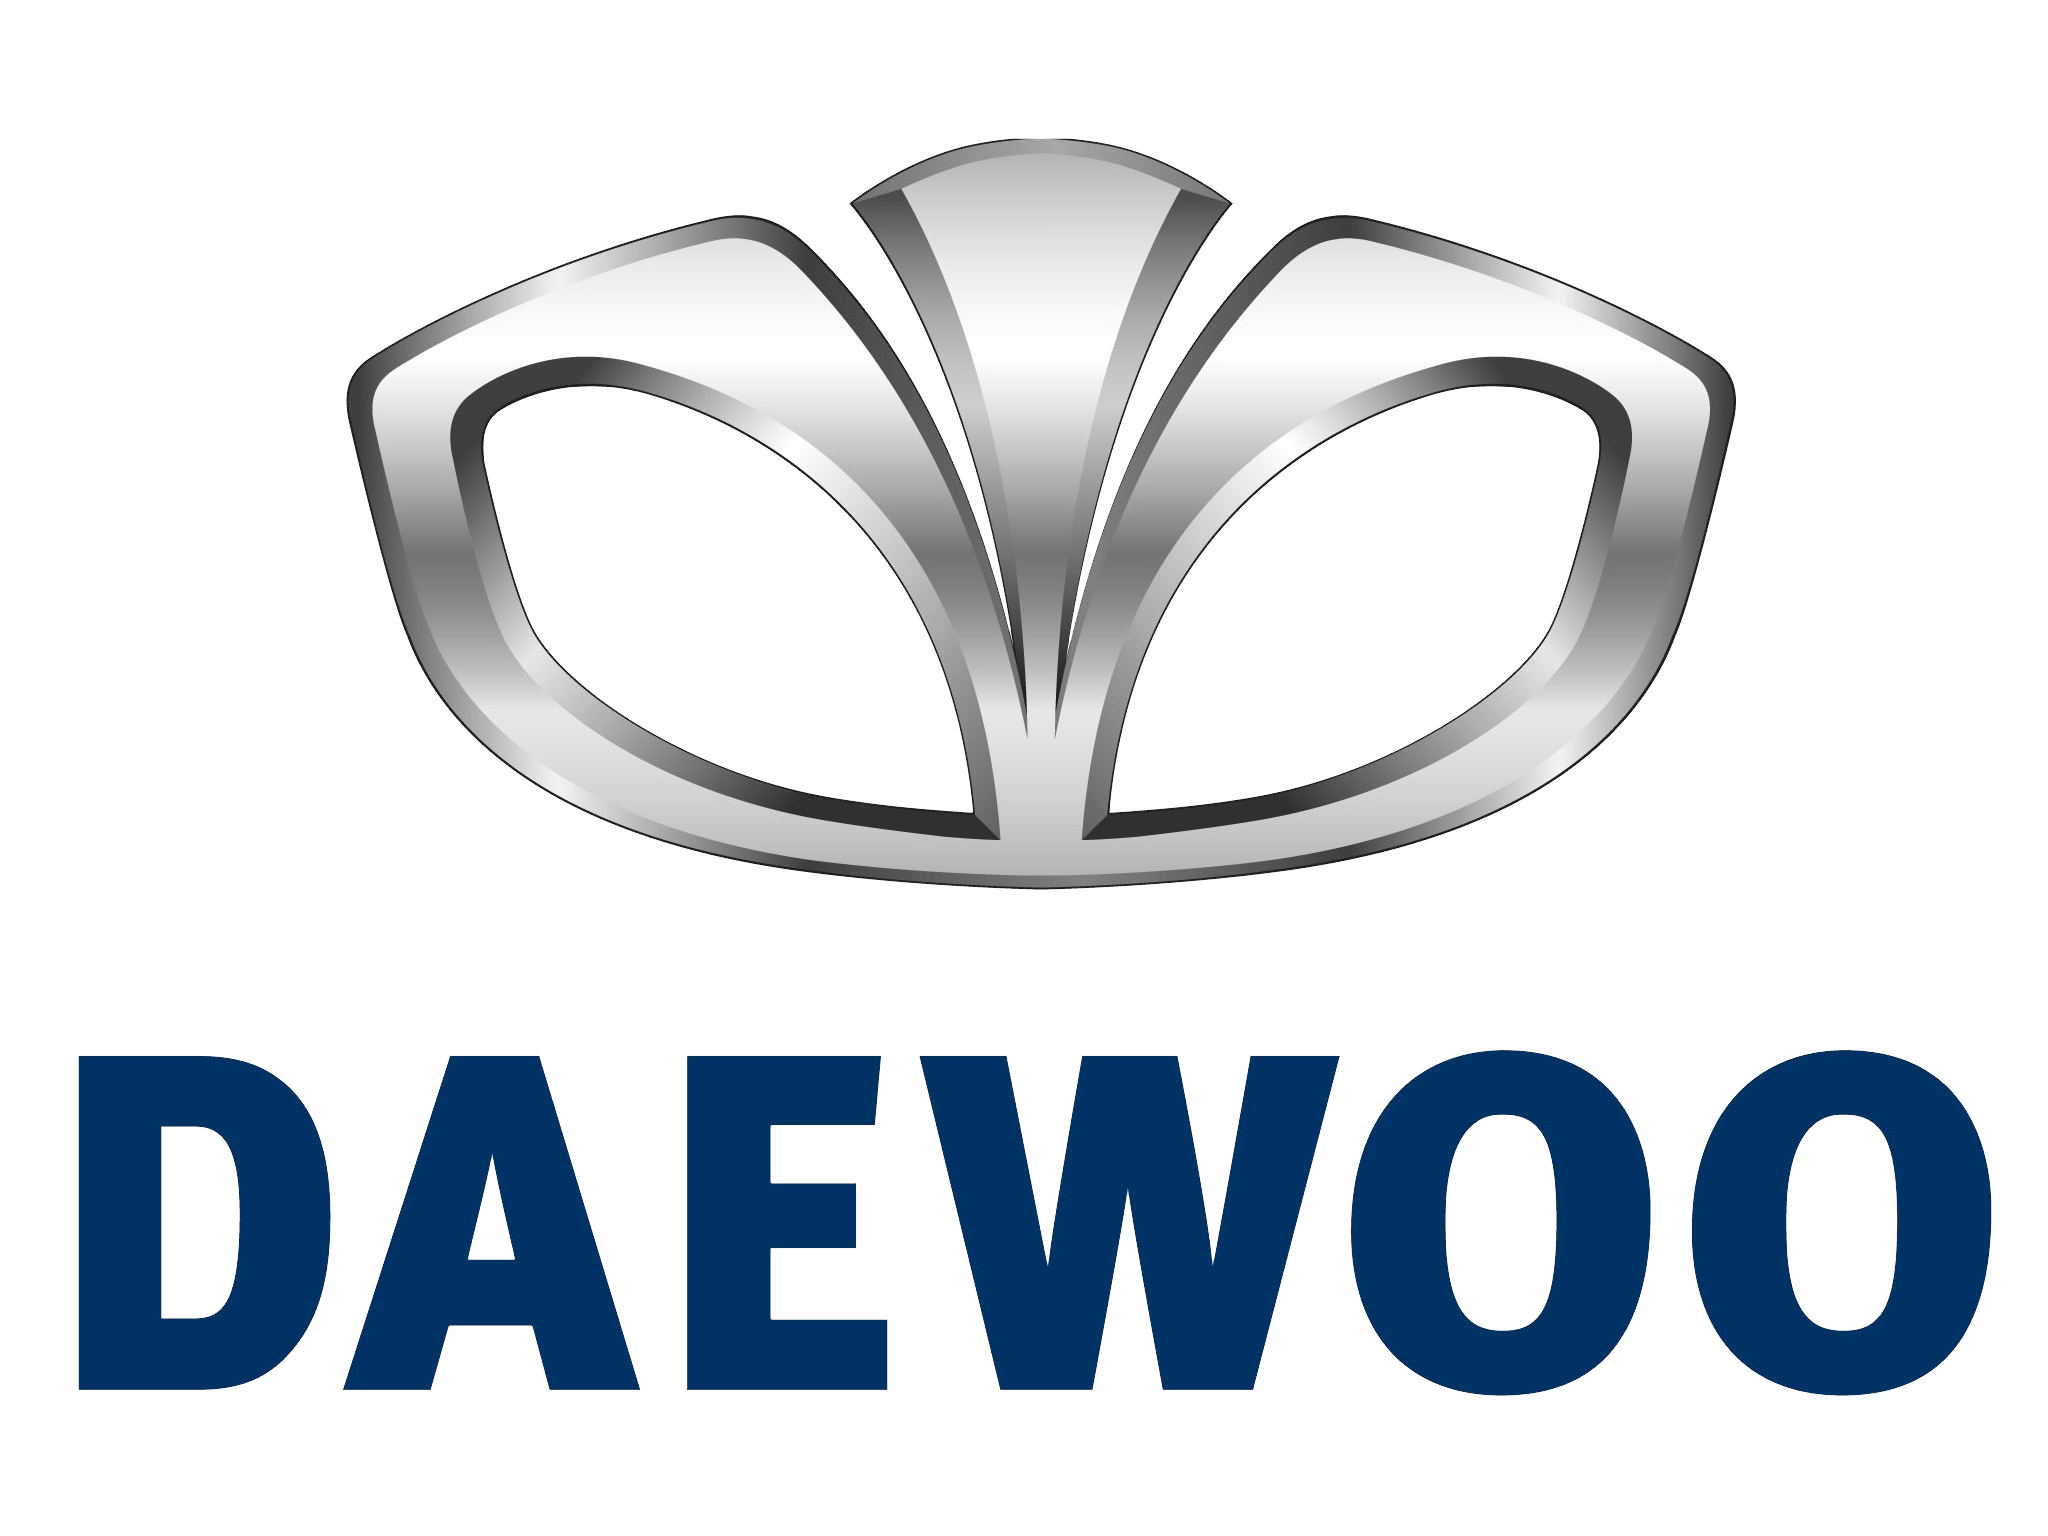 Daewoo-Logo